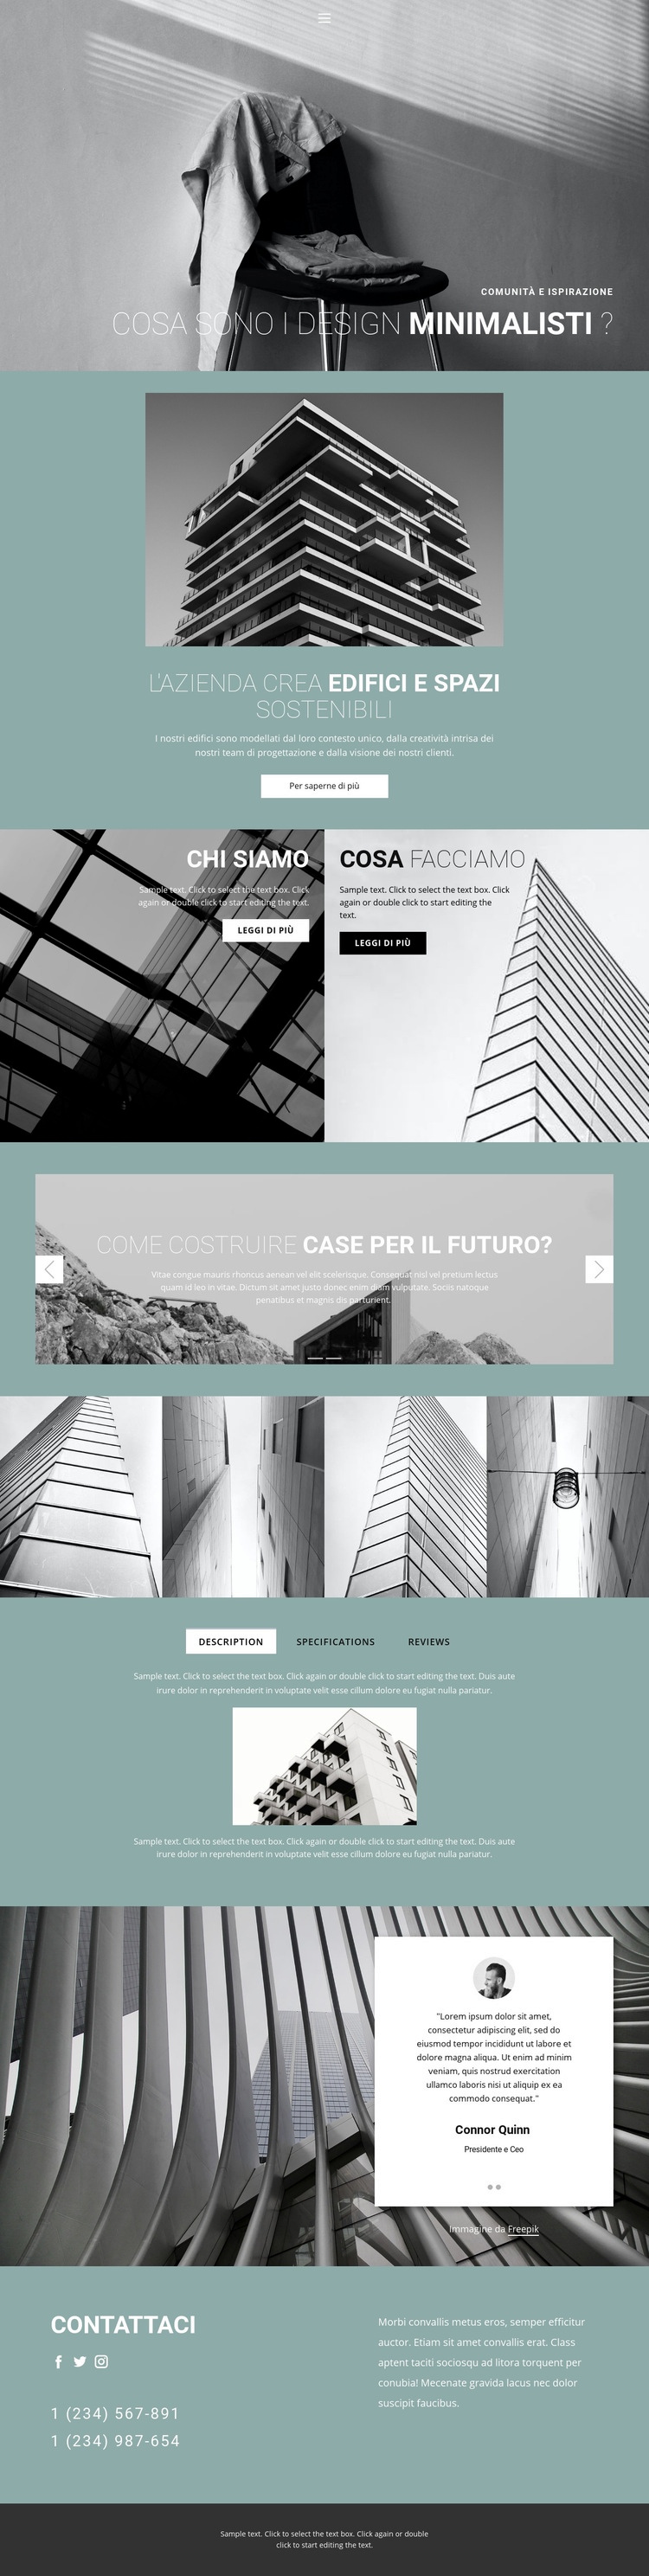 Idee di architettura perfette Mockup del sito web